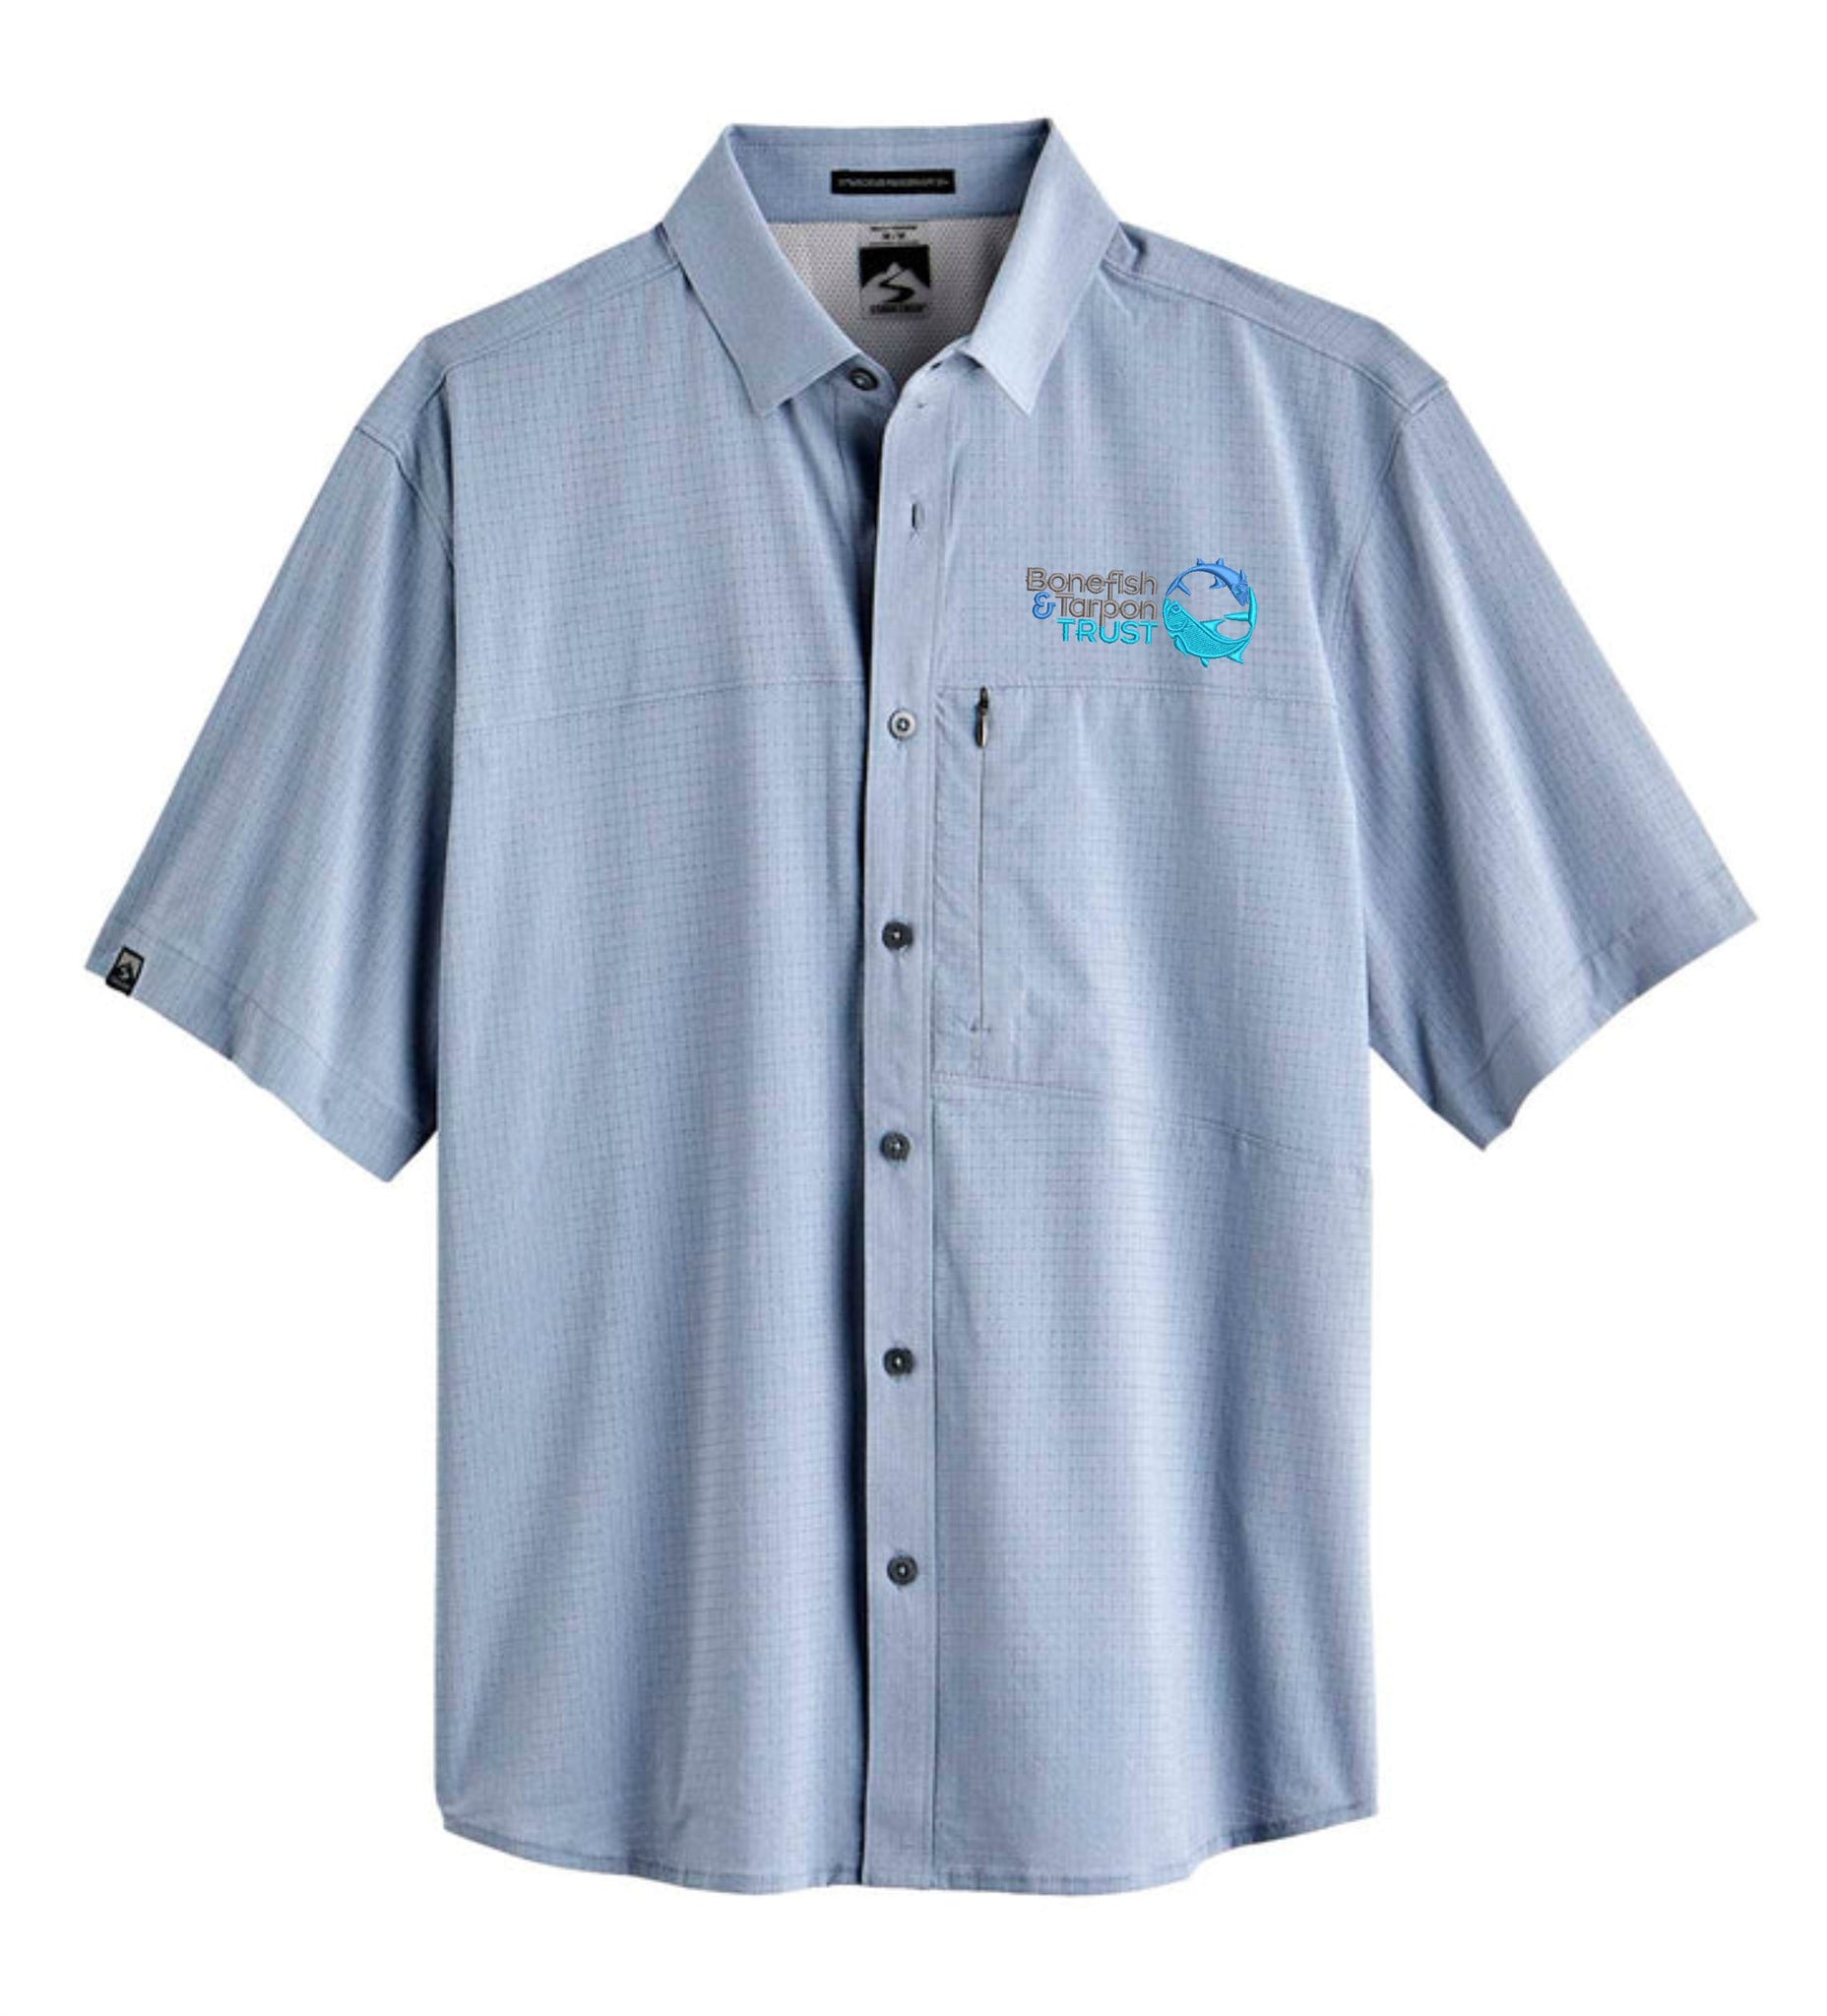 Men's Naturalist Short Sleeve Shirt - Blue Mist